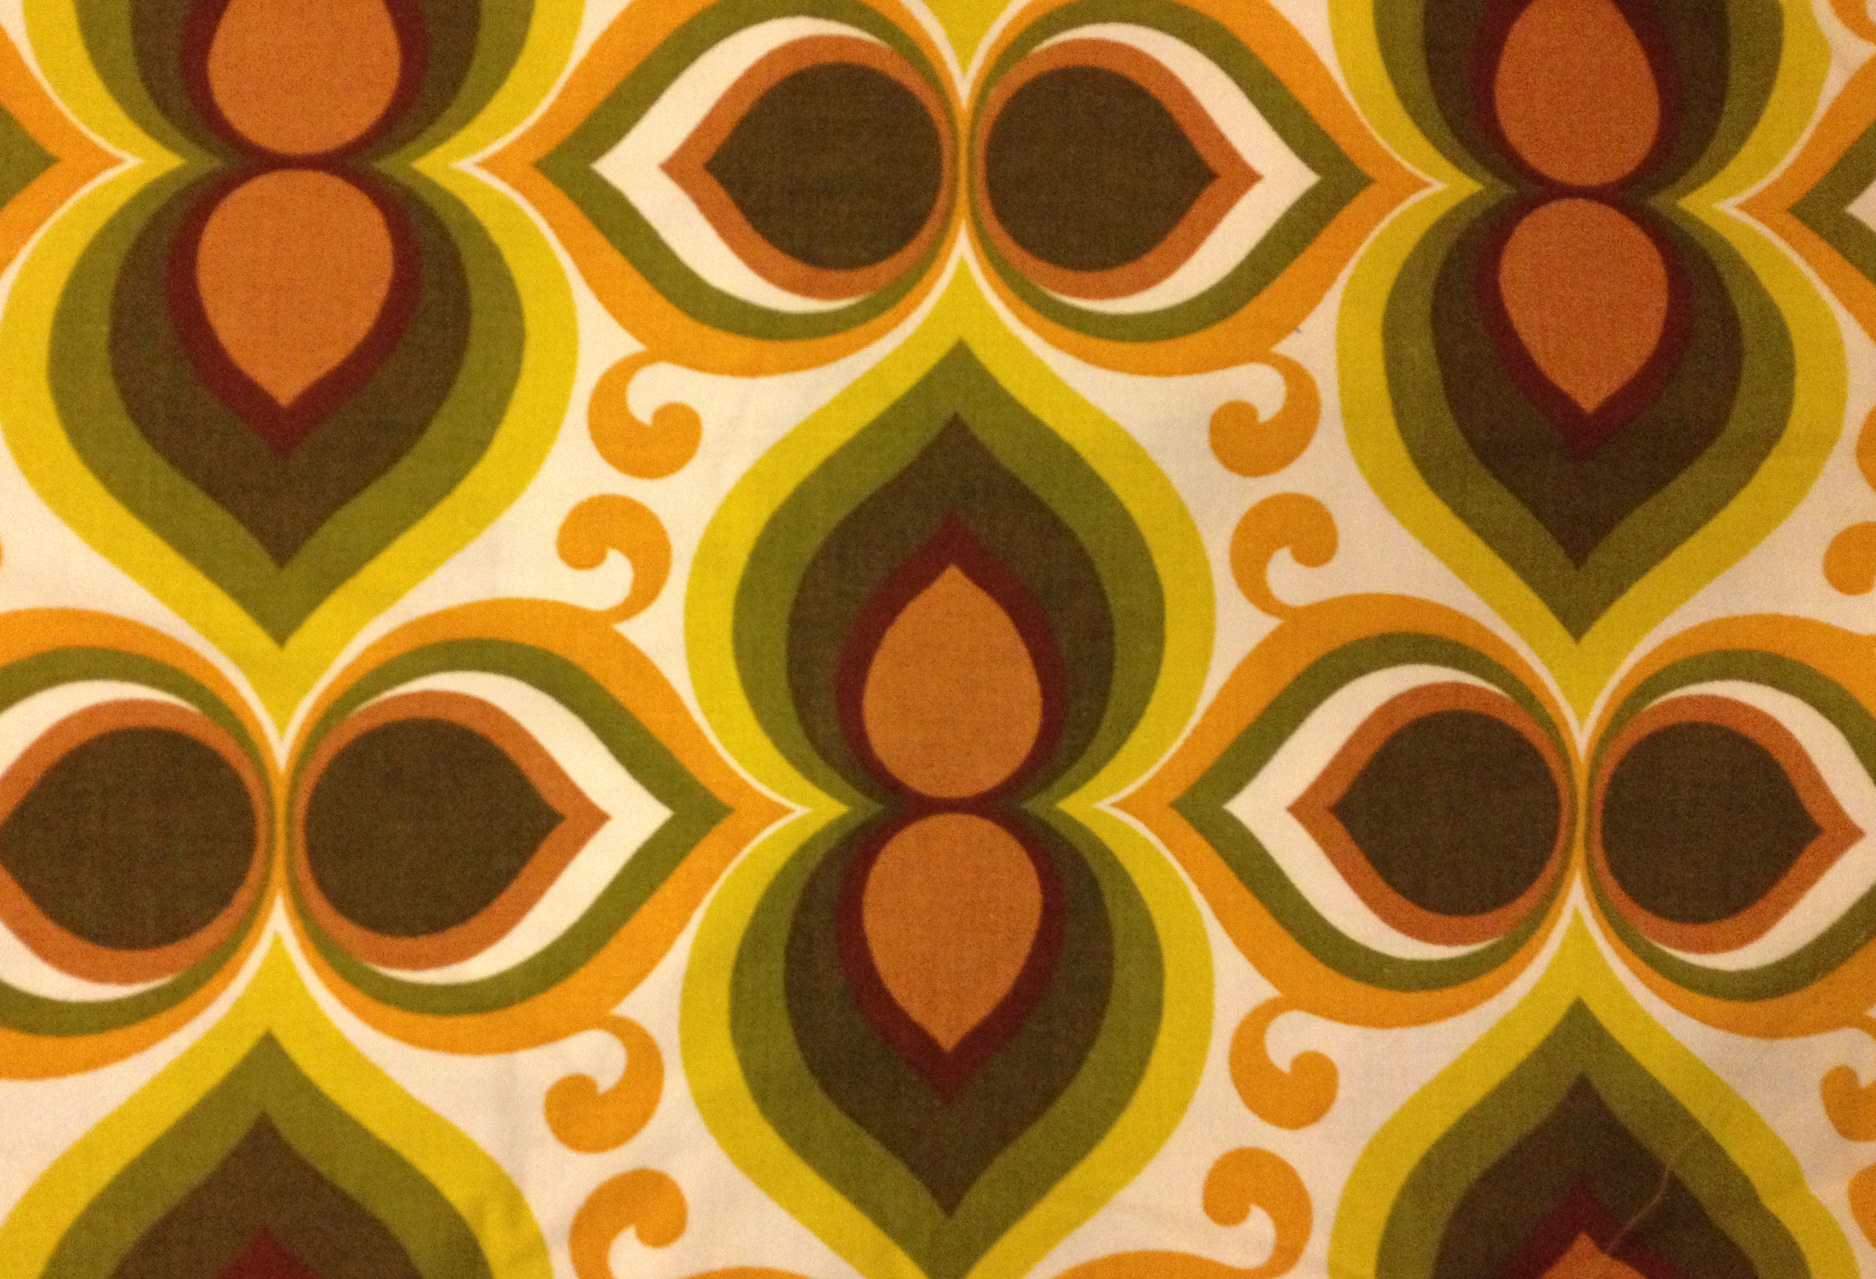 tapete im stil der 60er jahre,muster,orange,gelb,grün,symmetrie